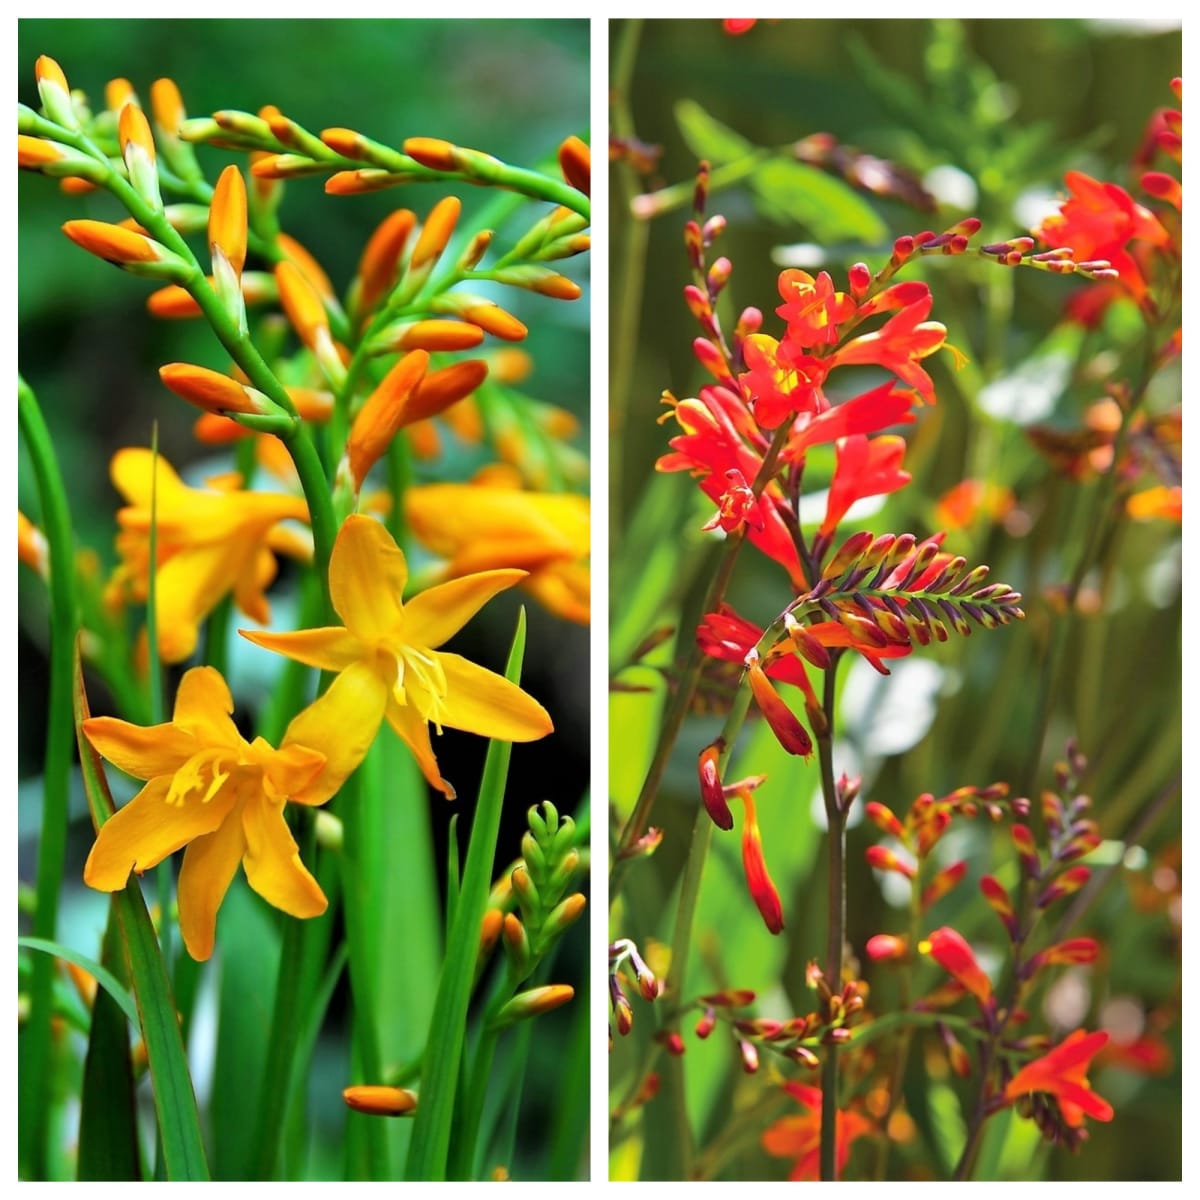  Montbrecie svými květy připomínají frézie, vzpřímenými a mečovitými listy kosatce a mečíky. Jejich hřejivé žluté, oranžové a červené květy zdobí od června do října.